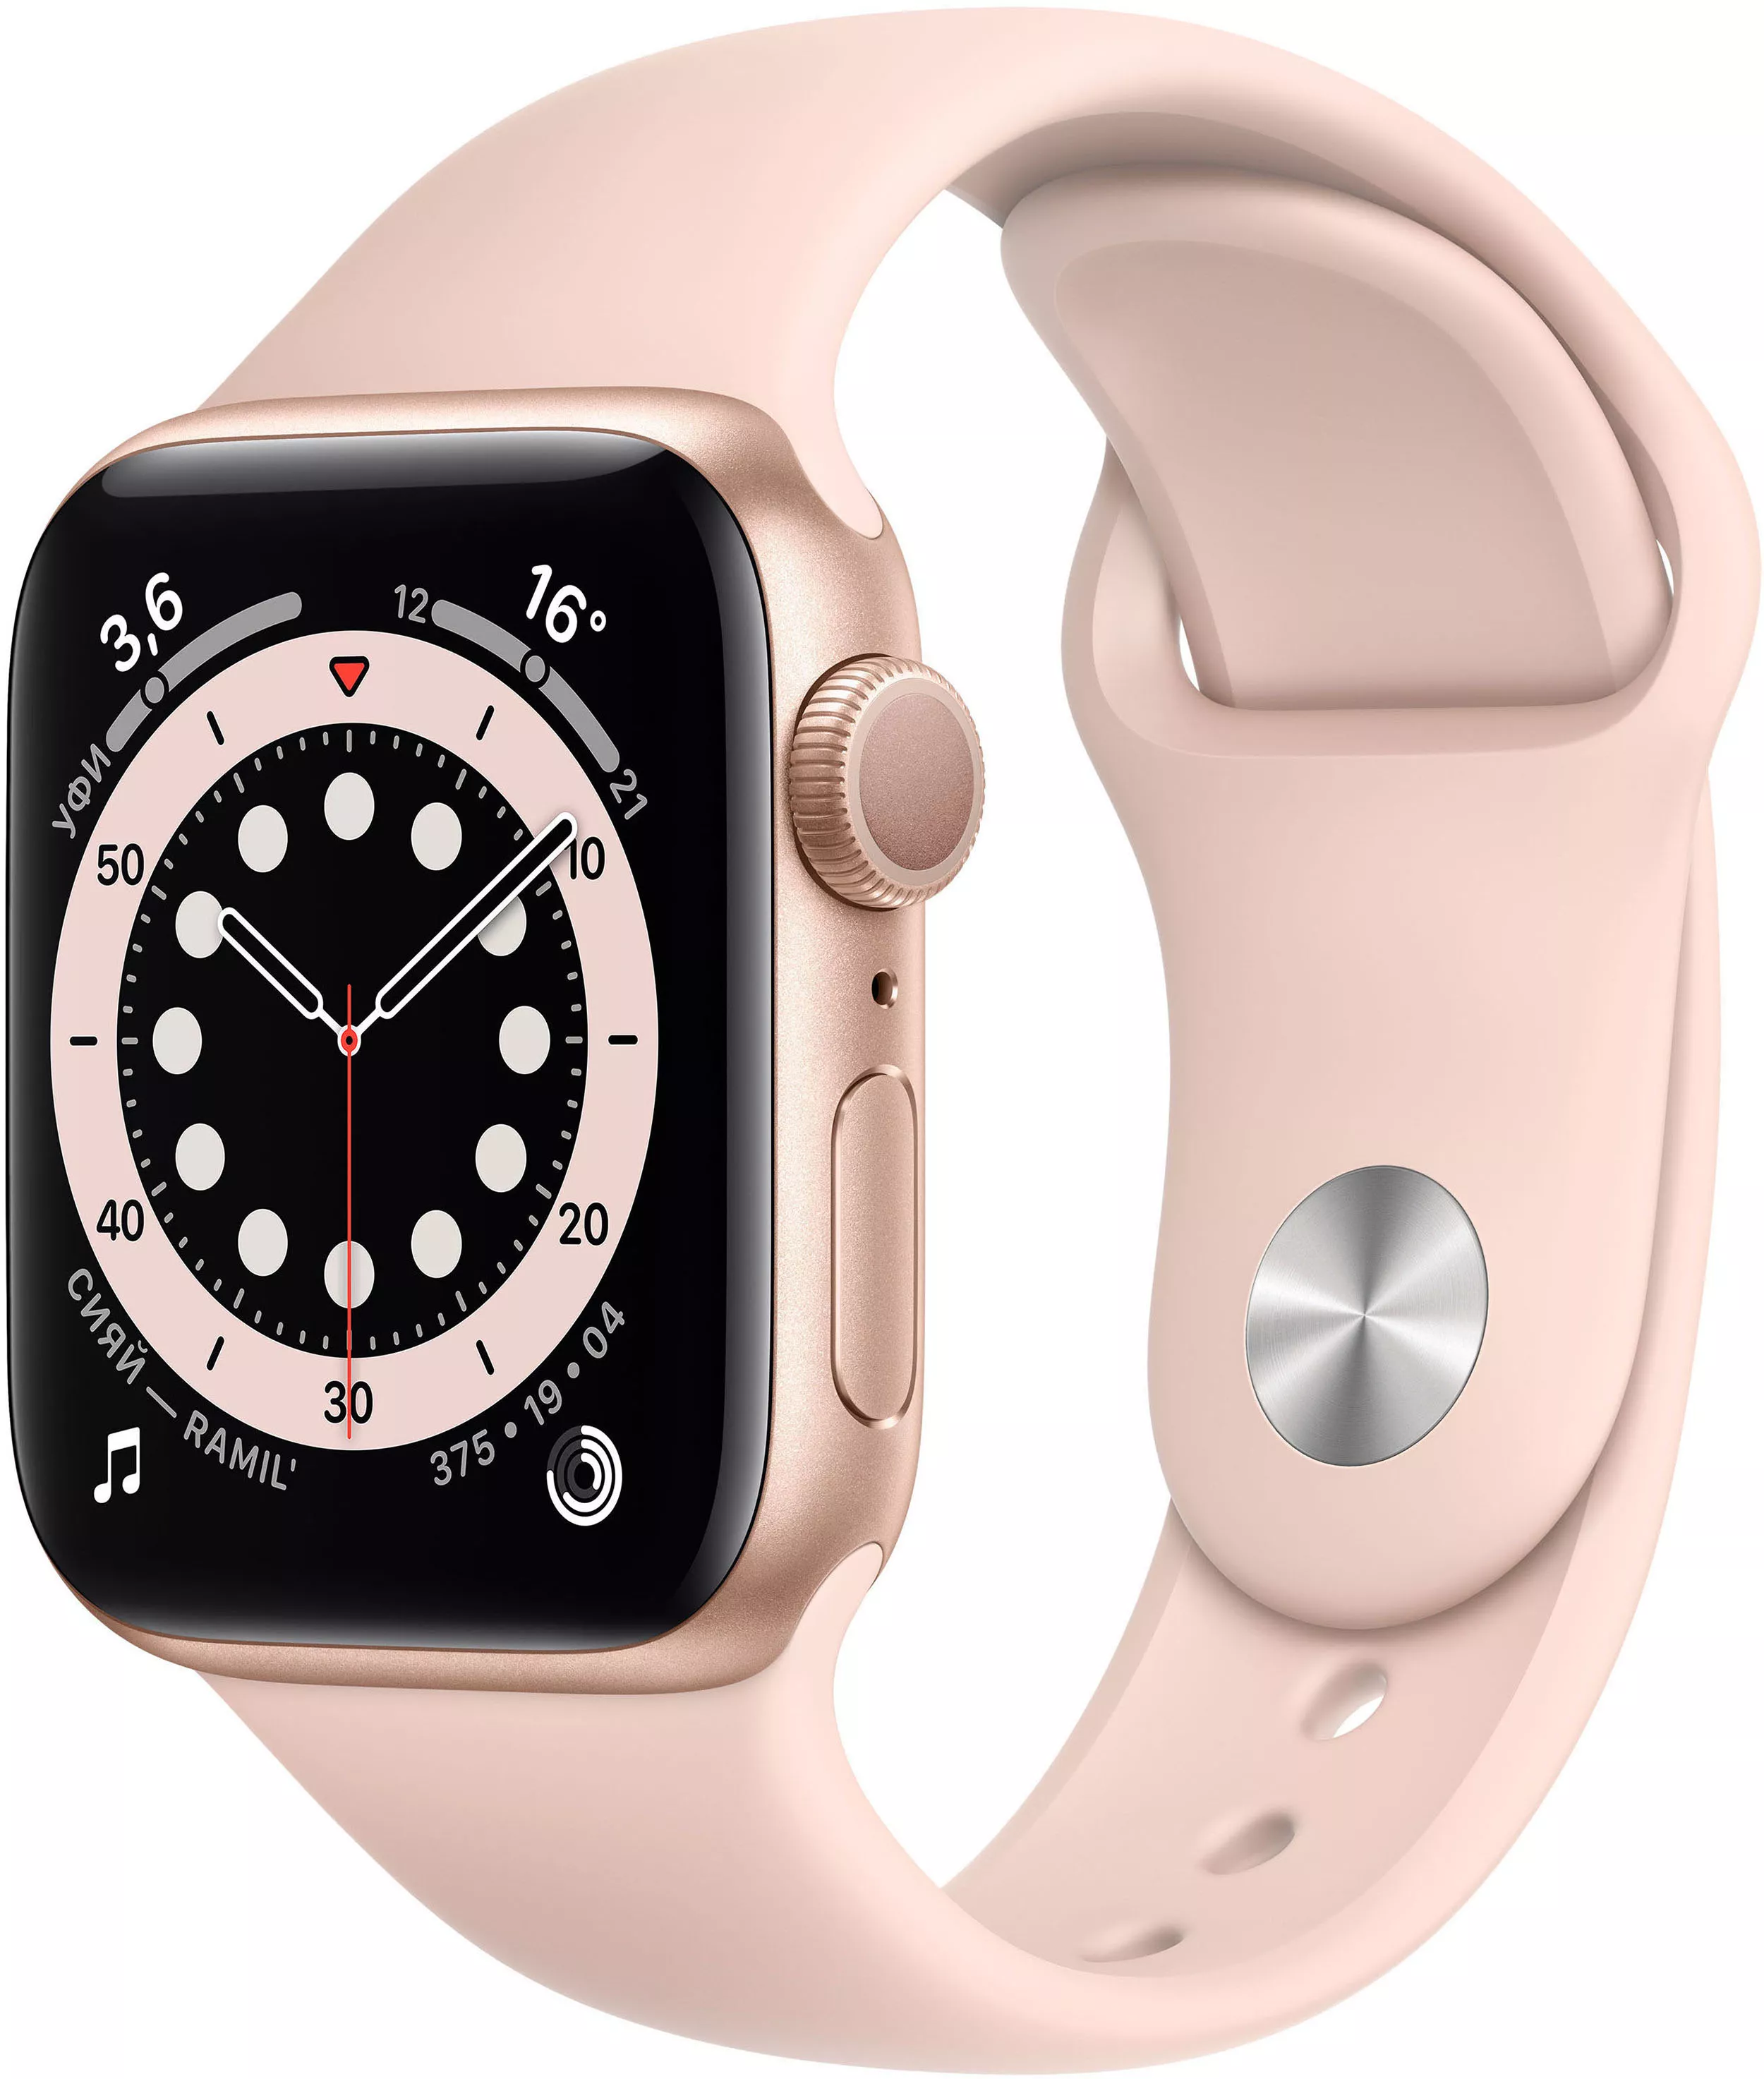 Apple Watch Series 6 40mm, золотистый алюминий, спортивный ремешок цвета «розовый песок». Вид 1